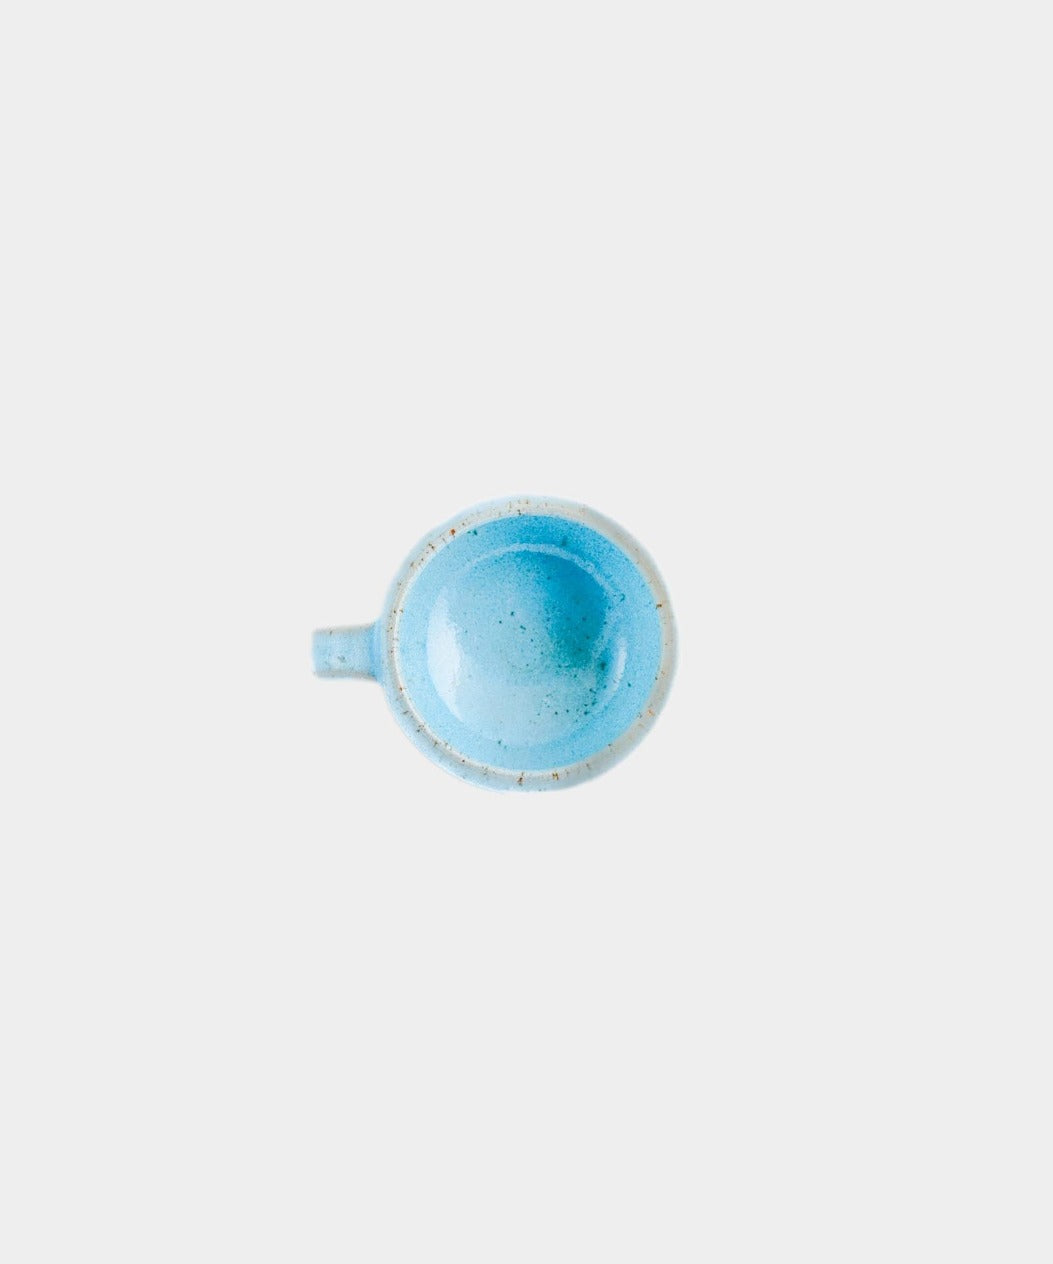 Håndlavet Keramik Espressokop | SKY by Vang | Kerama 1